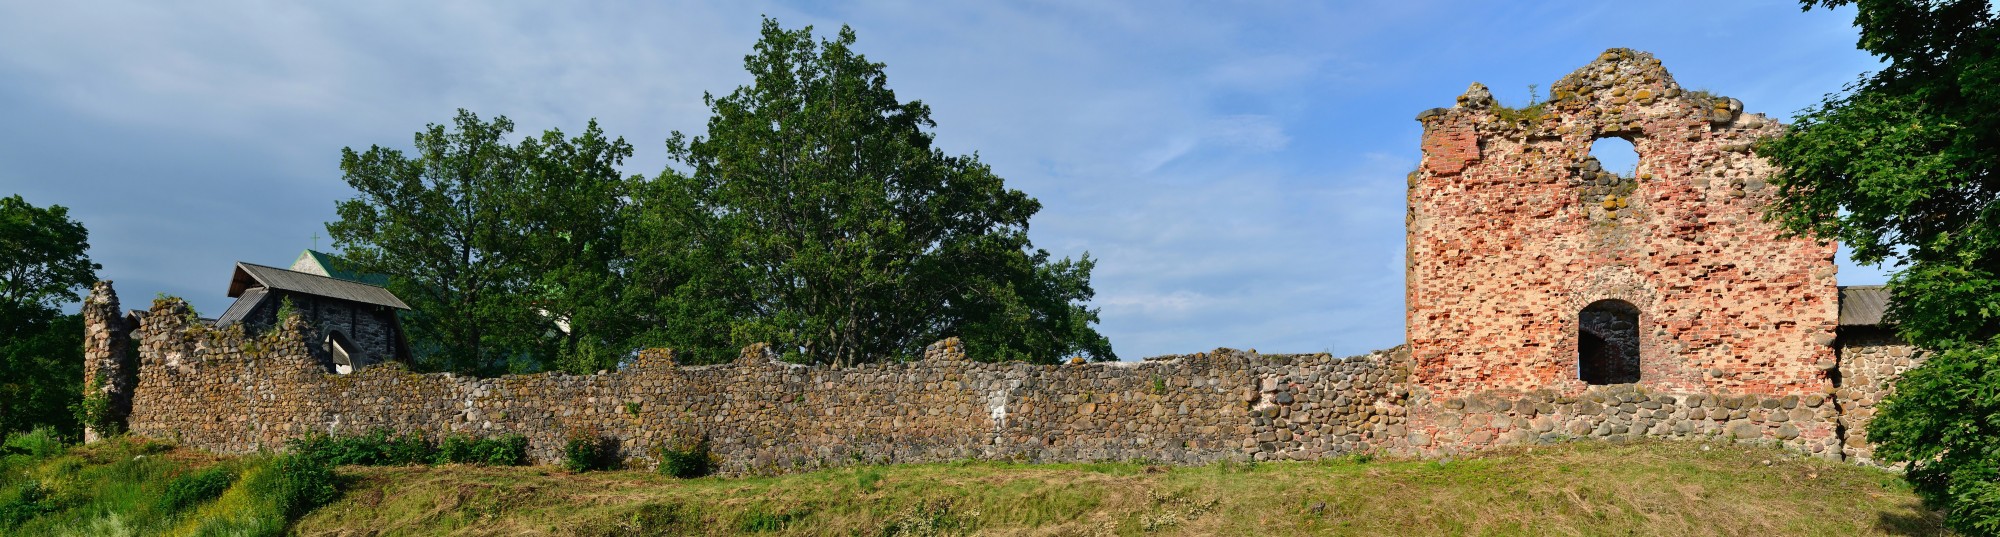 Karksi ordulinnuse varemed 2012